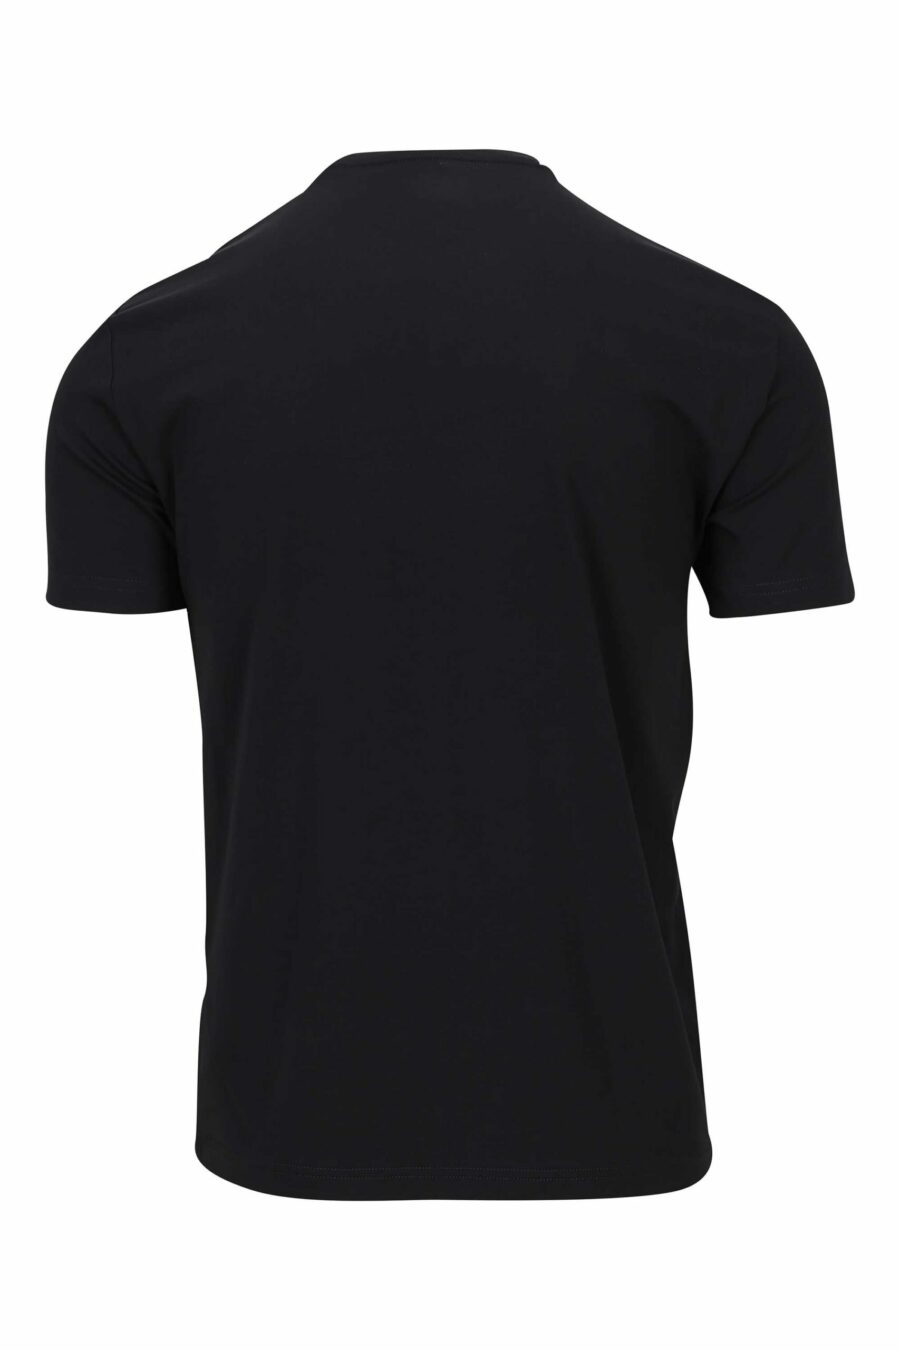 T-shirt black with blue "lux identity" mix maxilogo - 8056787953161 1 scaled